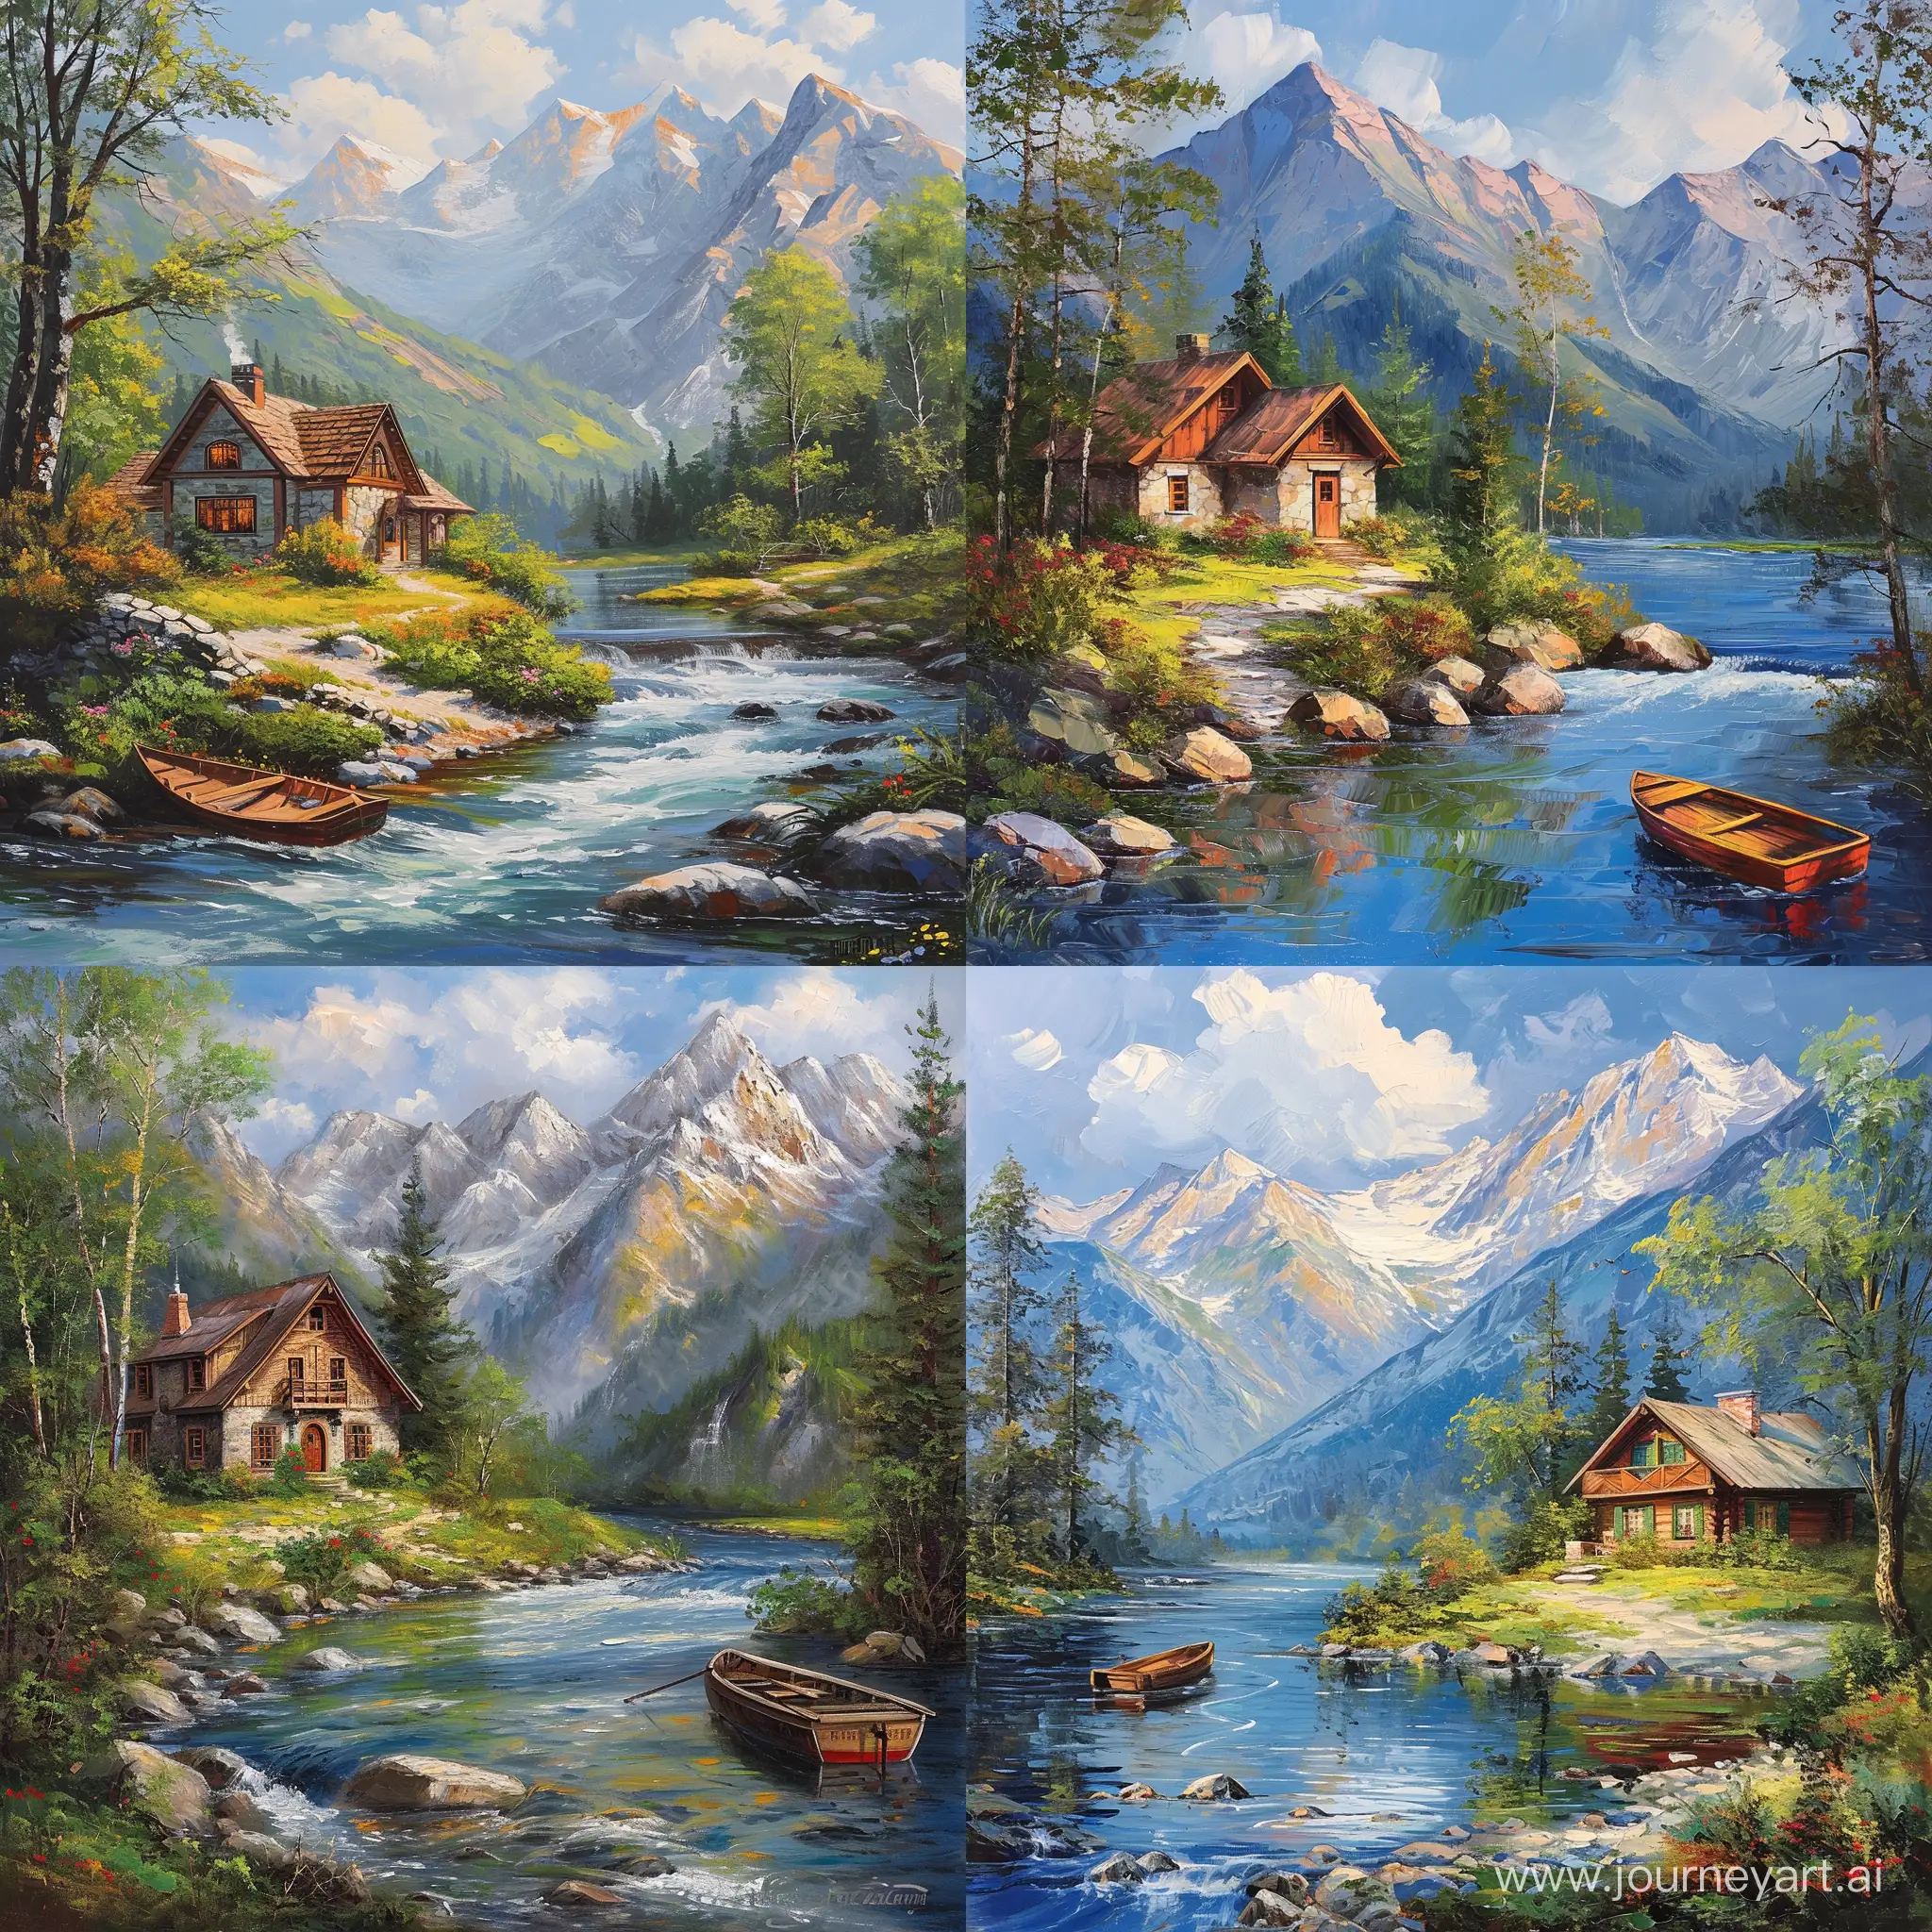 Пейзаж маслянными красками на холсте уютный домик в горах у реки с лодкой